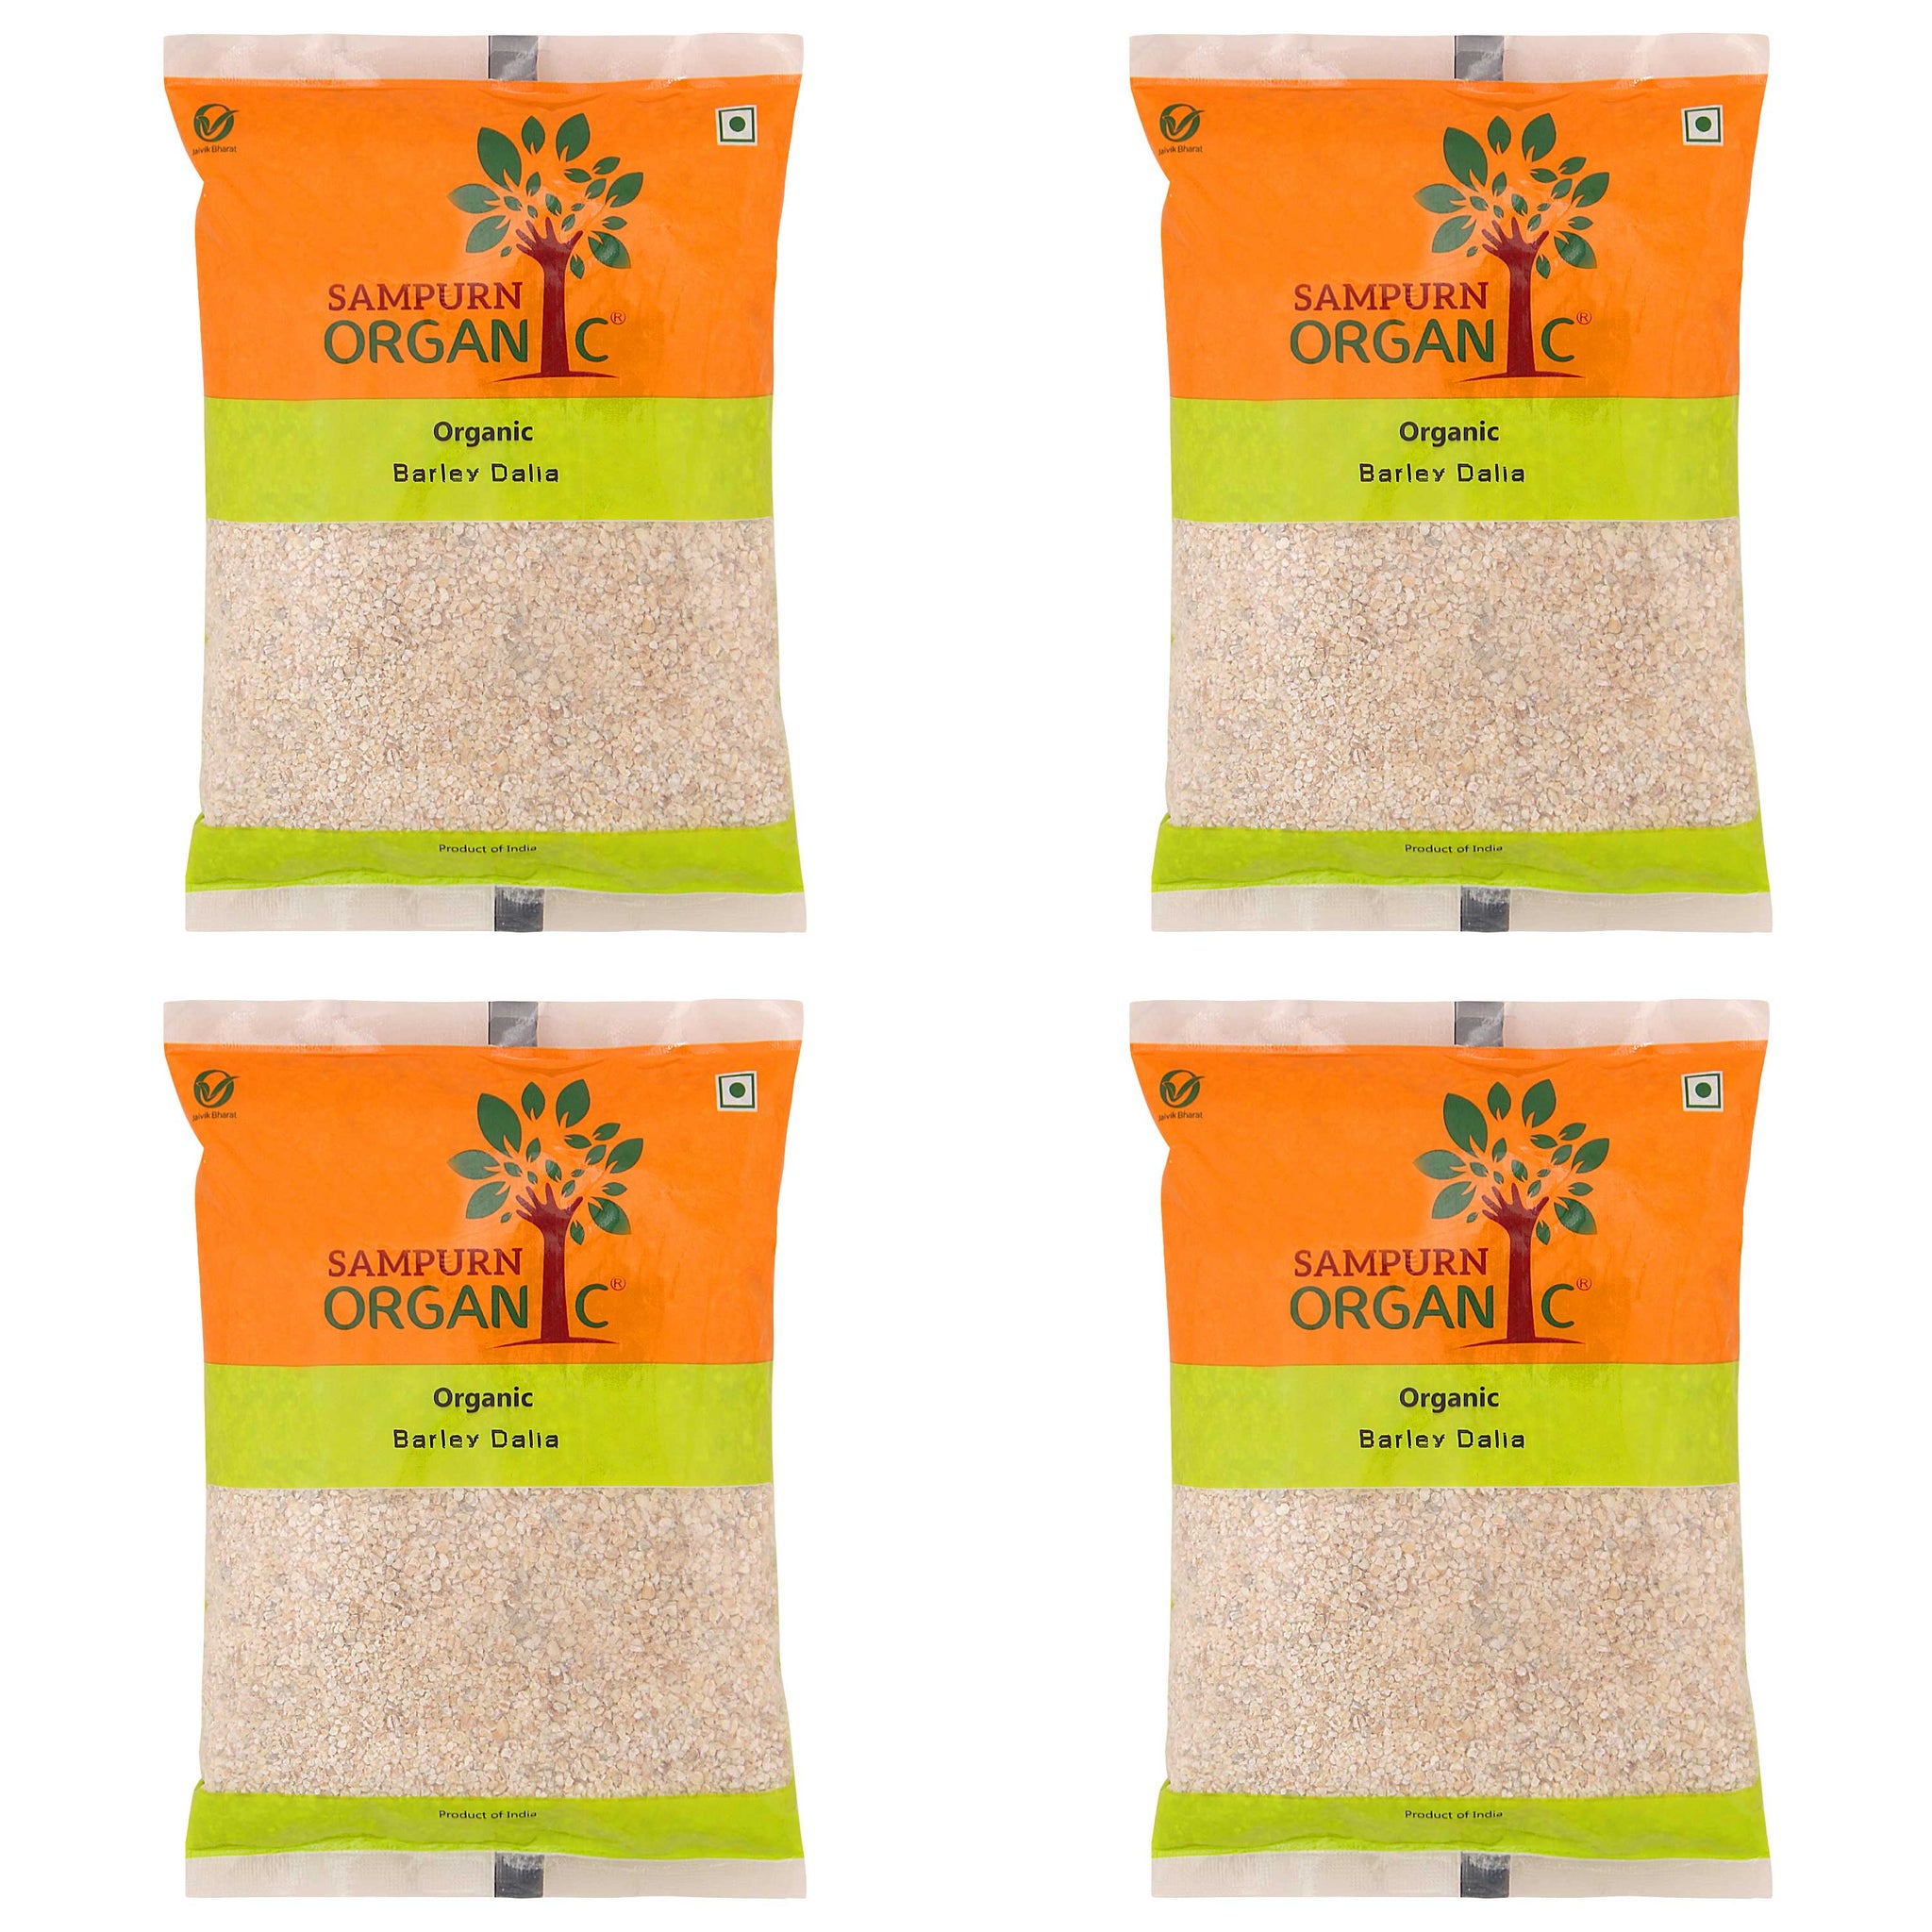 Sampurn organic barley dalia 500g combo pack 2 kg whole grain pearled barle natural barely daliya bulgur jwar bajra bareley flakes seeds dhalia dhaliya rava green grocery feed